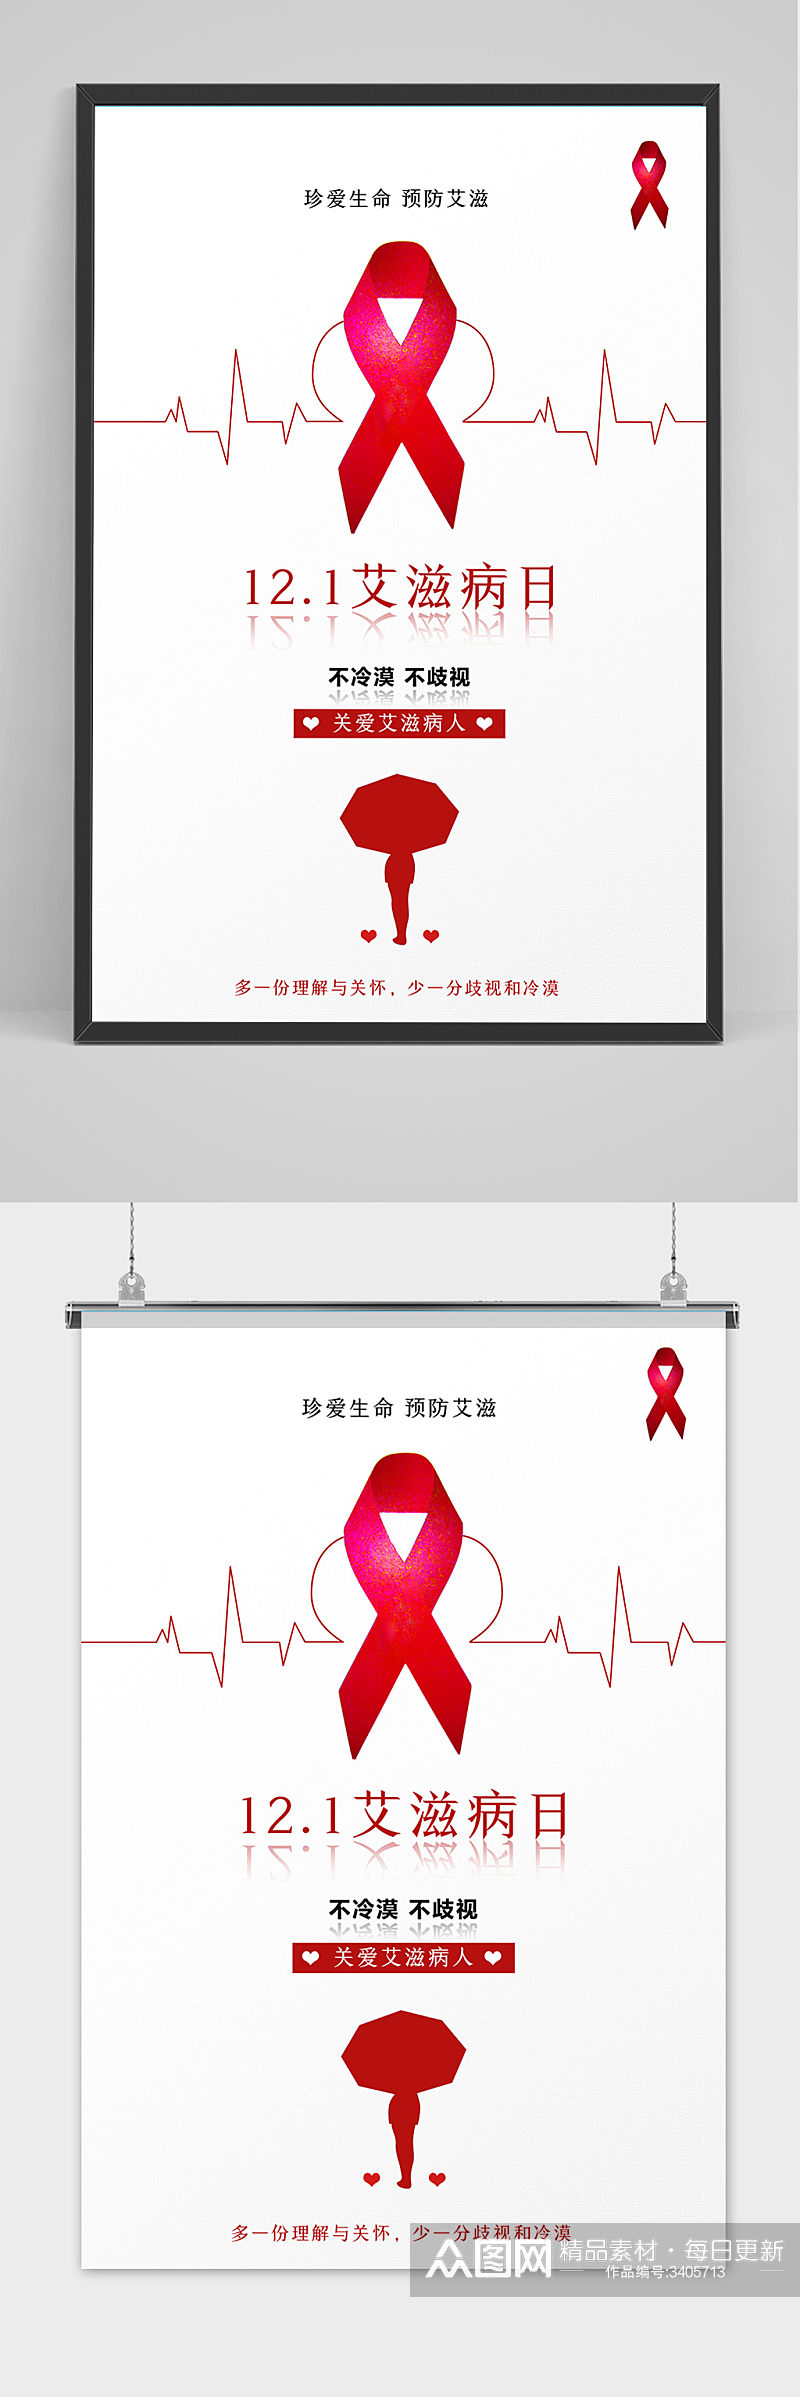 极简创意世界艾滋病日海报素材